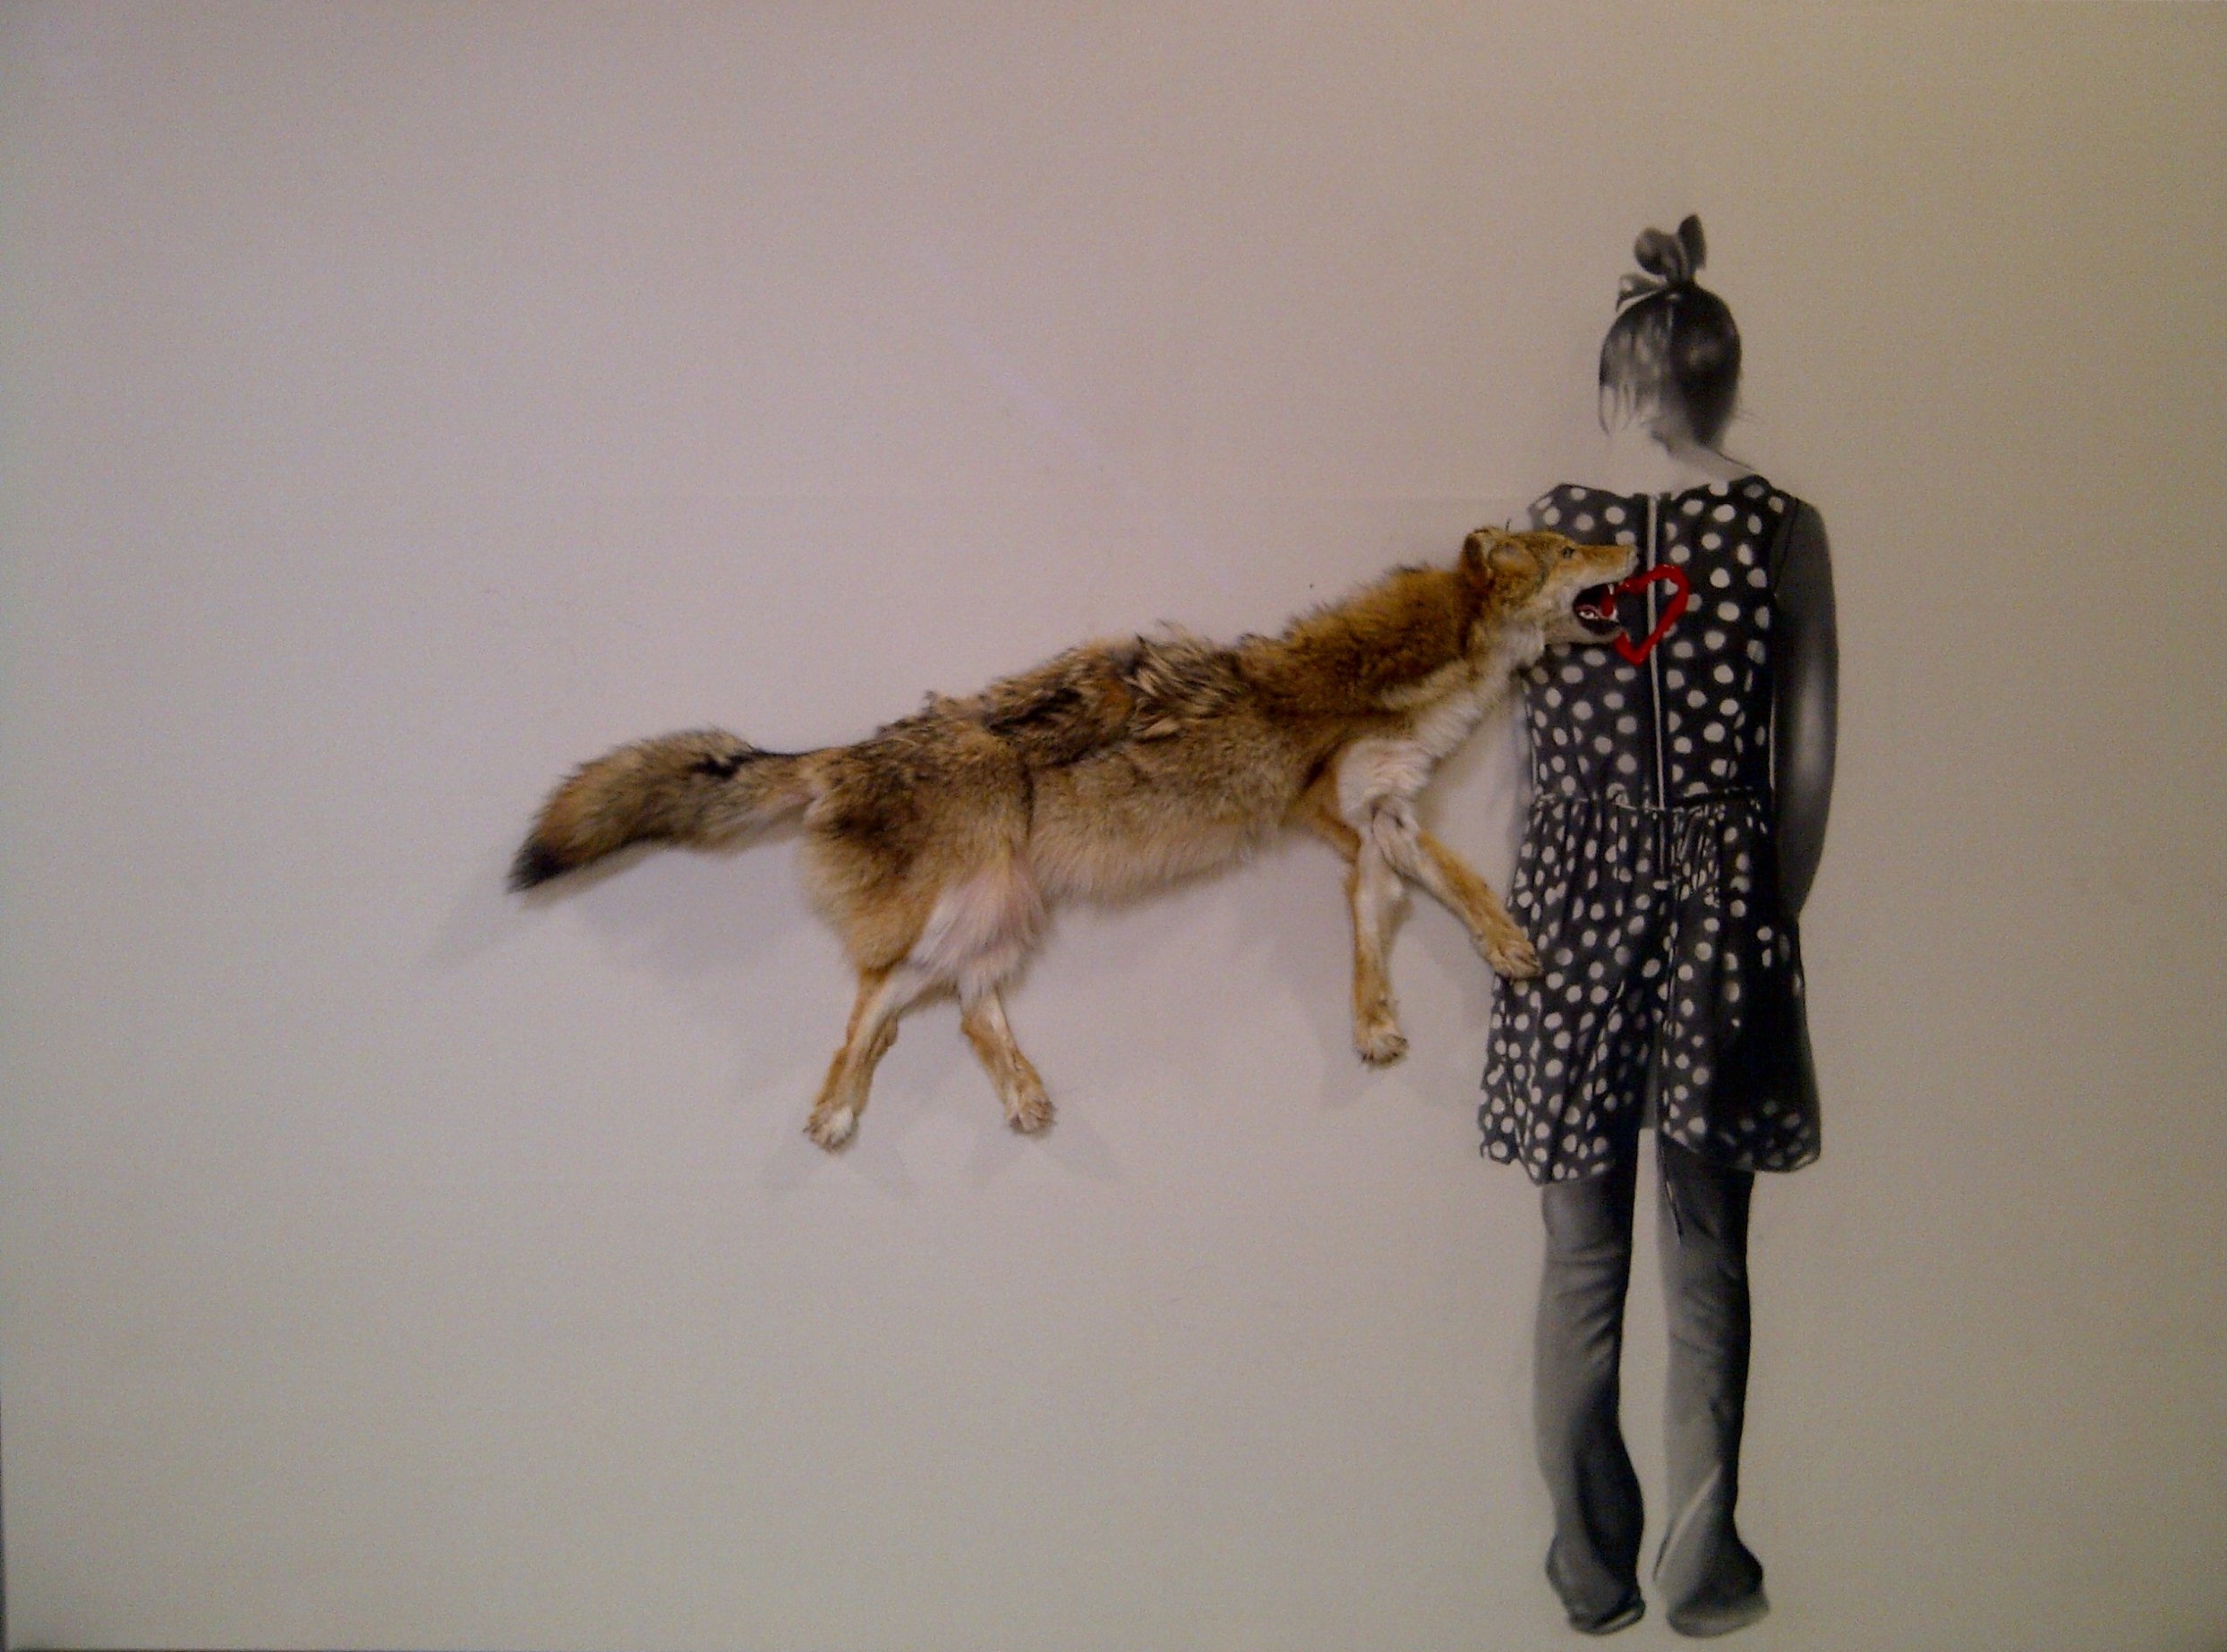   Roadkill coyote , 2010. Huile, fusain et coyote sur toile. 78 x 108 pouces.&nbsp; 